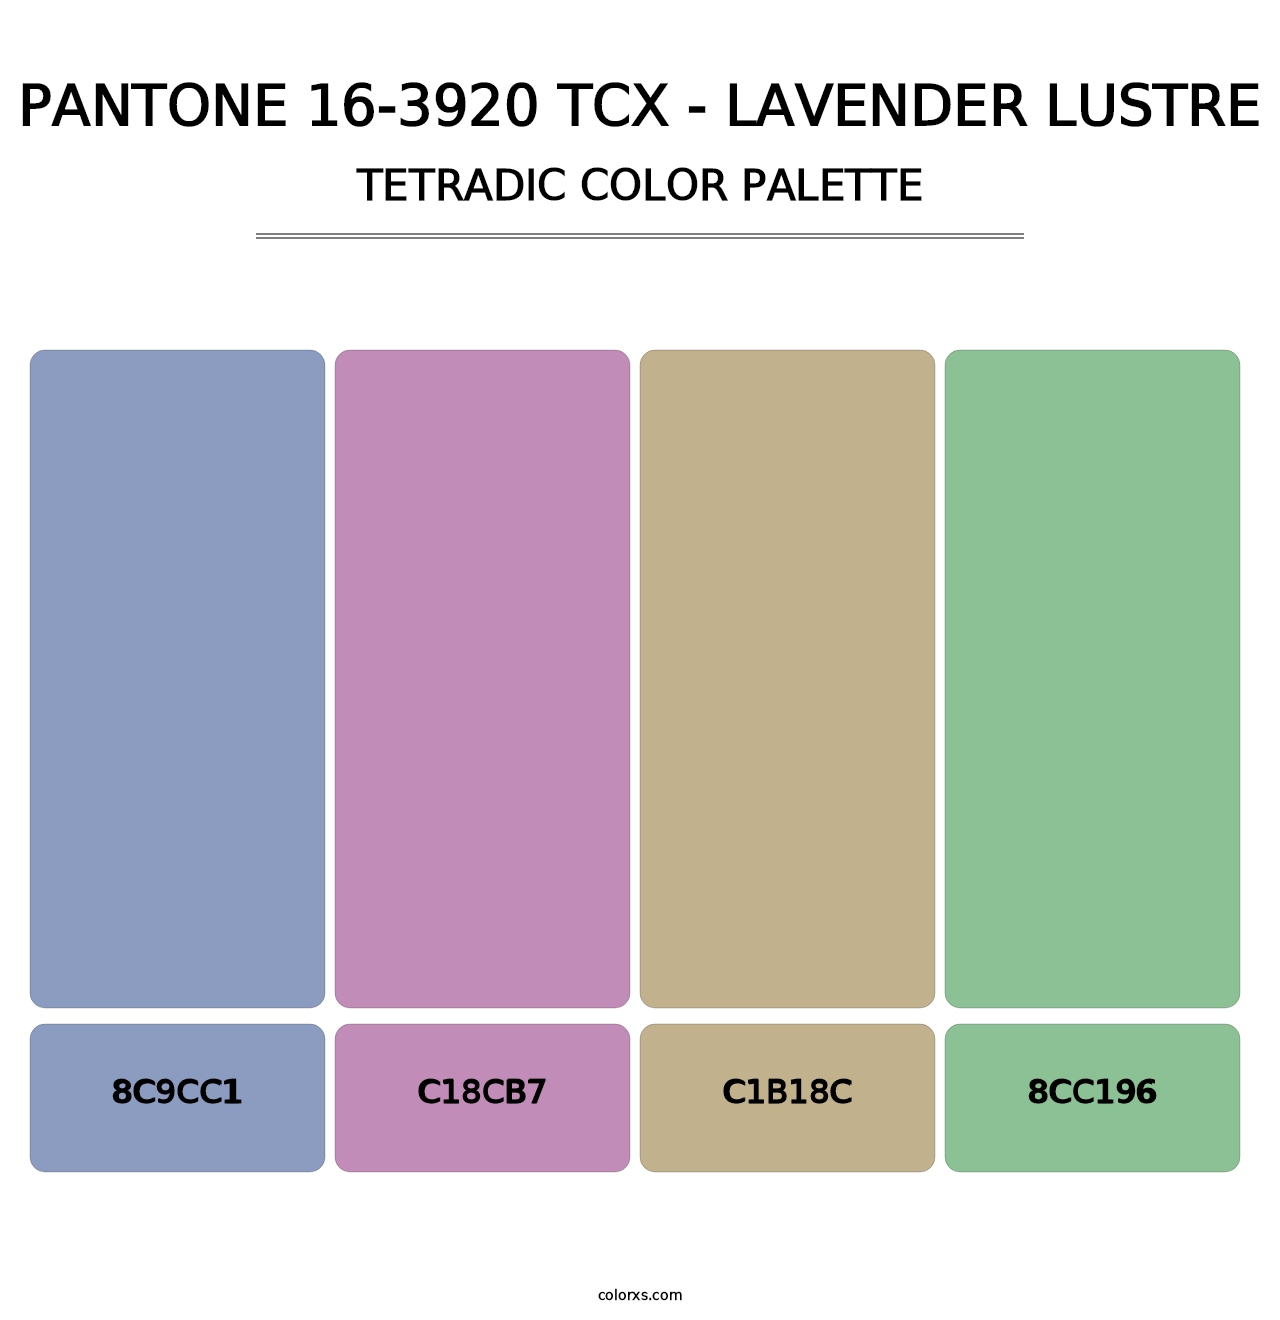 PANTONE 16-3920 TCX - Lavender Lustre - Tetradic Color Palette